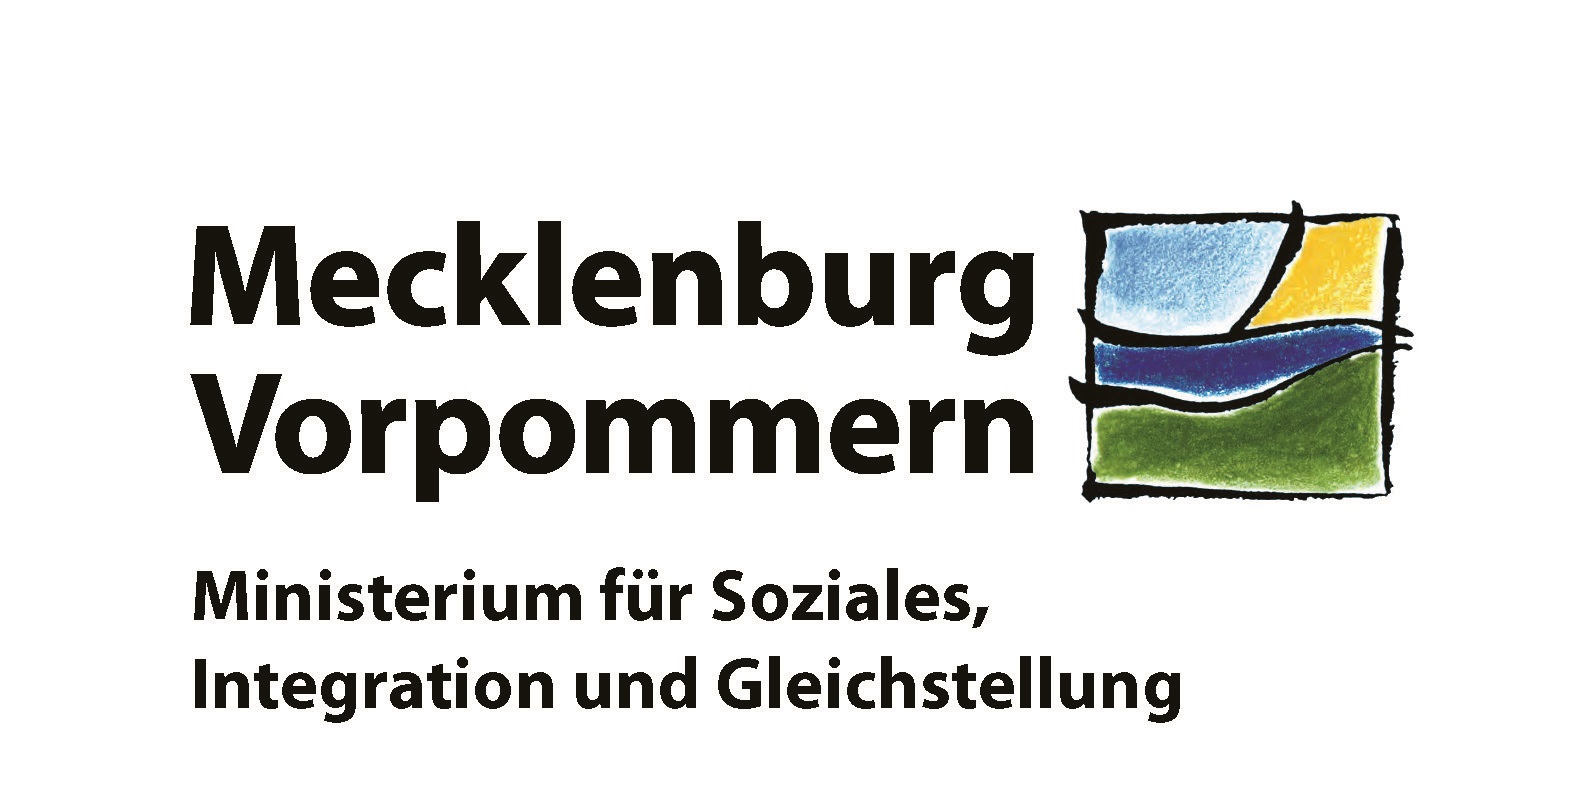 Ministerium für Soziales, Integration und Gleichstellung Mecklenburg-Vorpommern